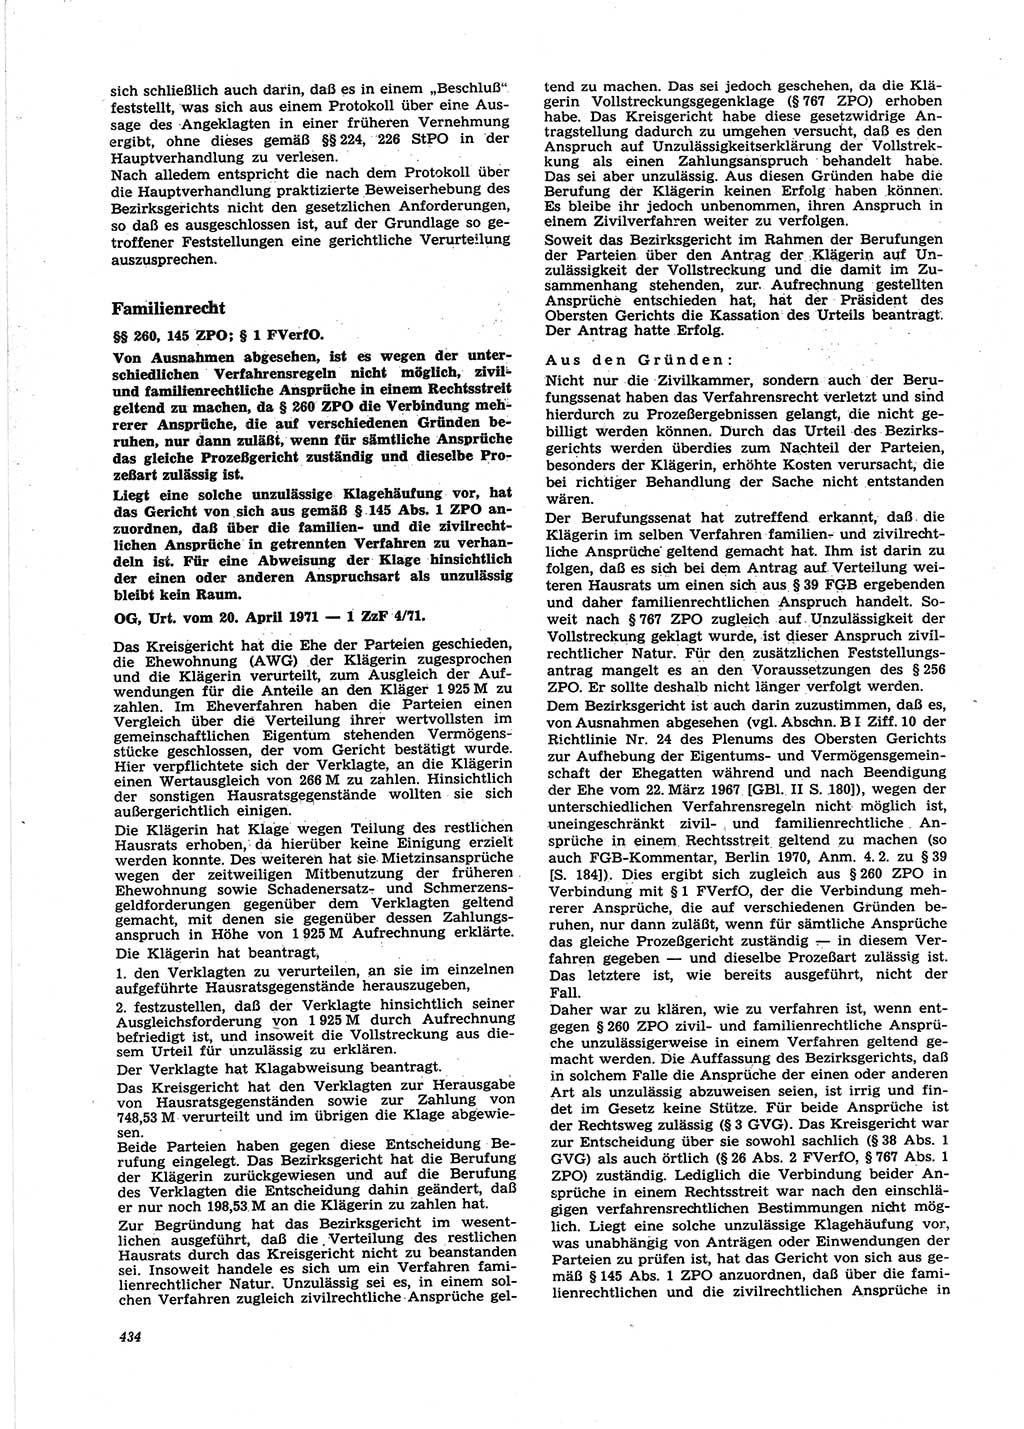 Neue Justiz (NJ), Zeitschrift für Recht und Rechtswissenschaft [Deutsche Demokratische Republik (DDR)], 25. Jahrgang 1971, Seite 434 (NJ DDR 1971, S. 434)